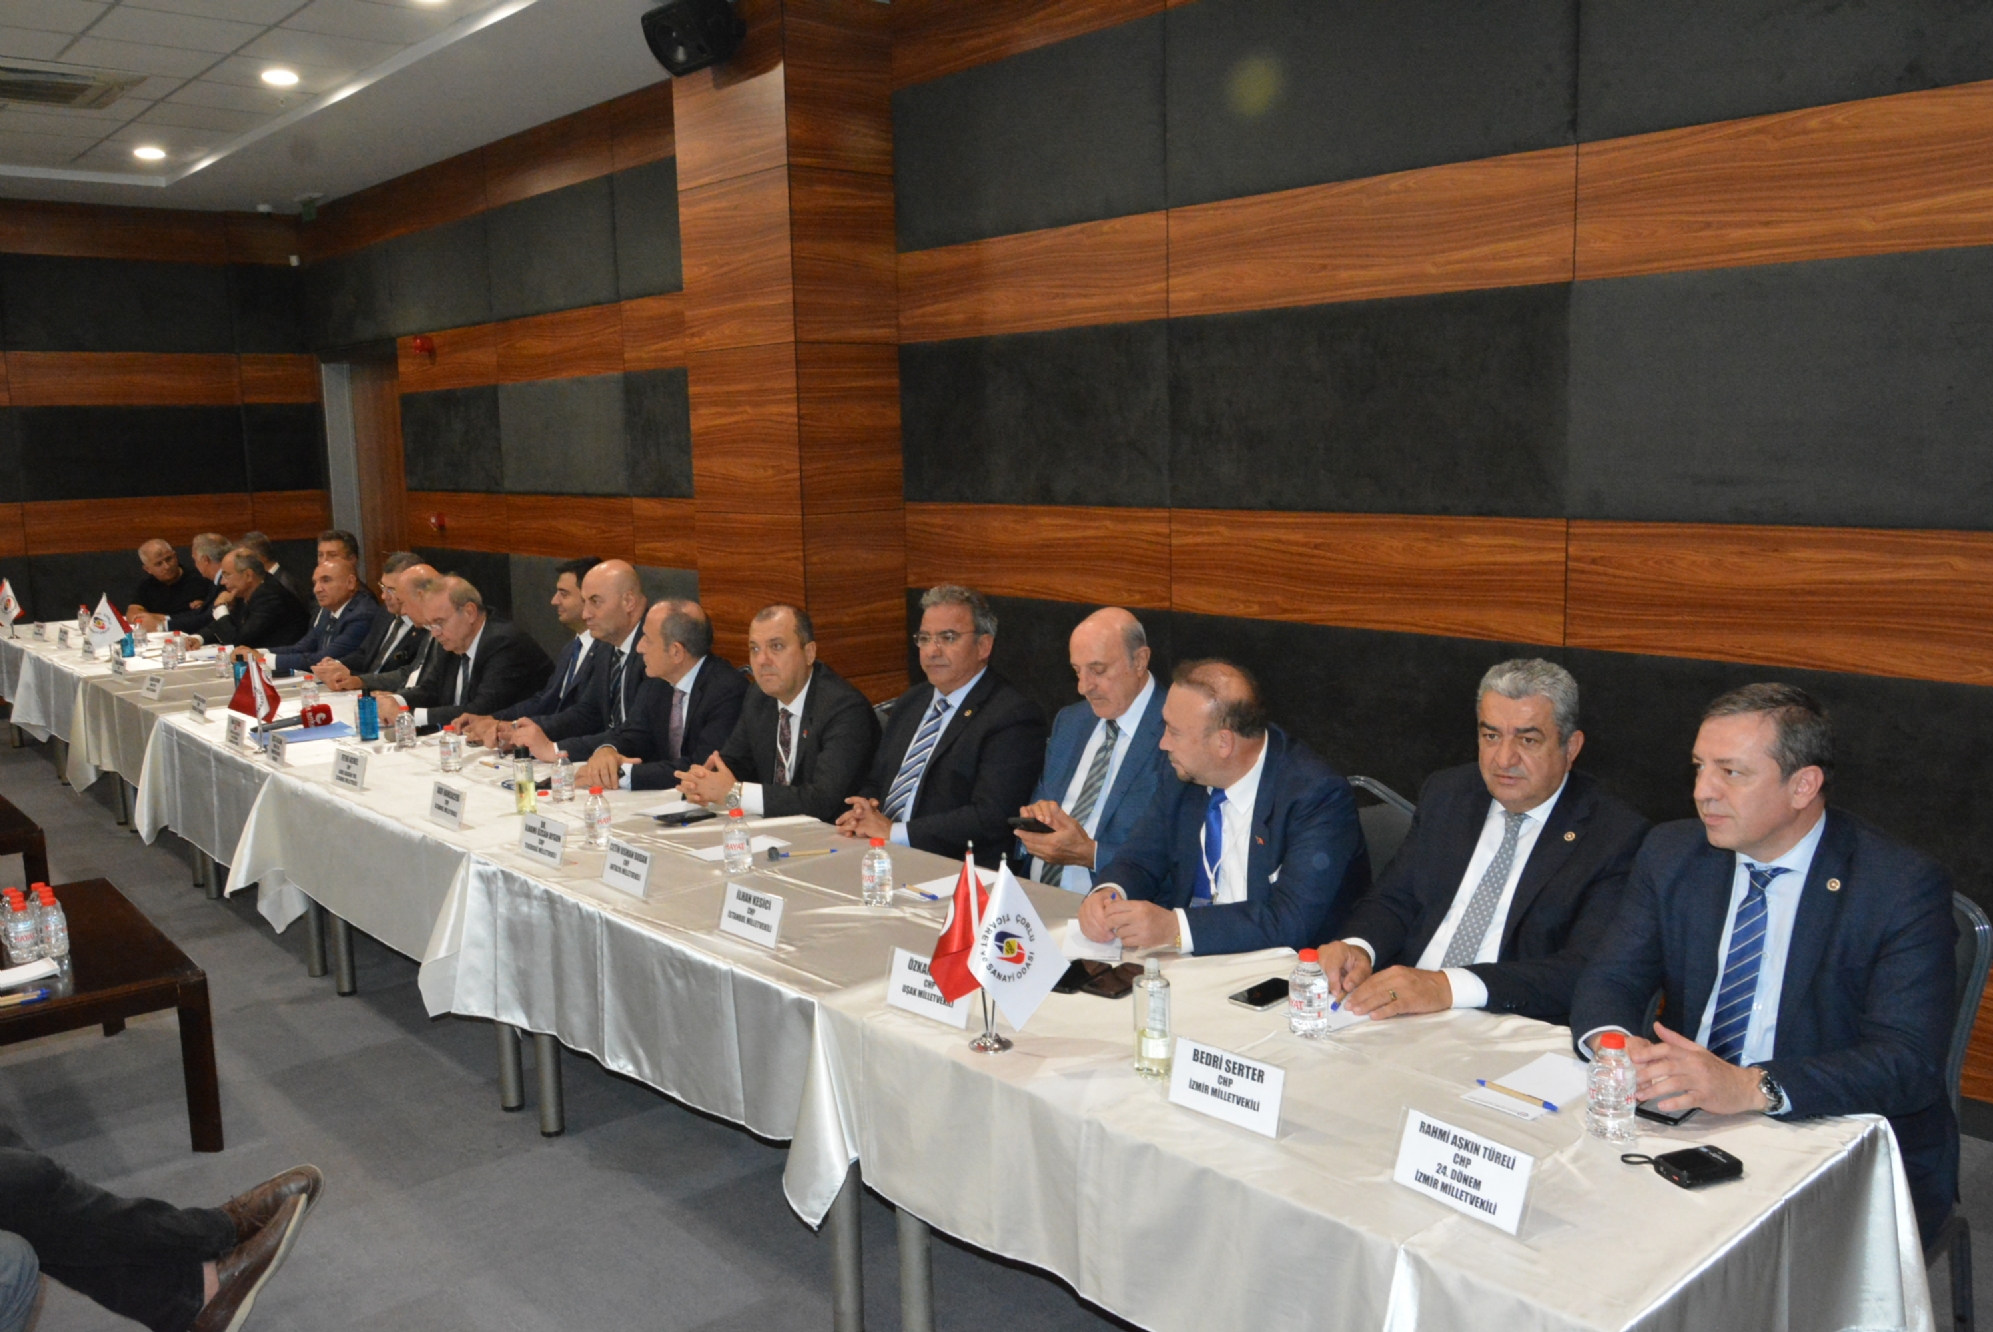 CHP Genel Başkan Yardımcısı ve Parti Sözcüsü, Tekirdağ Milletvekili Sayın Faik Öztrakın  Başkanlığında,  Düzenlenen  “CHP Ekonomi  Masası” Toplantısı  Odamız Ev Sahipliğinde Gerçekleşti